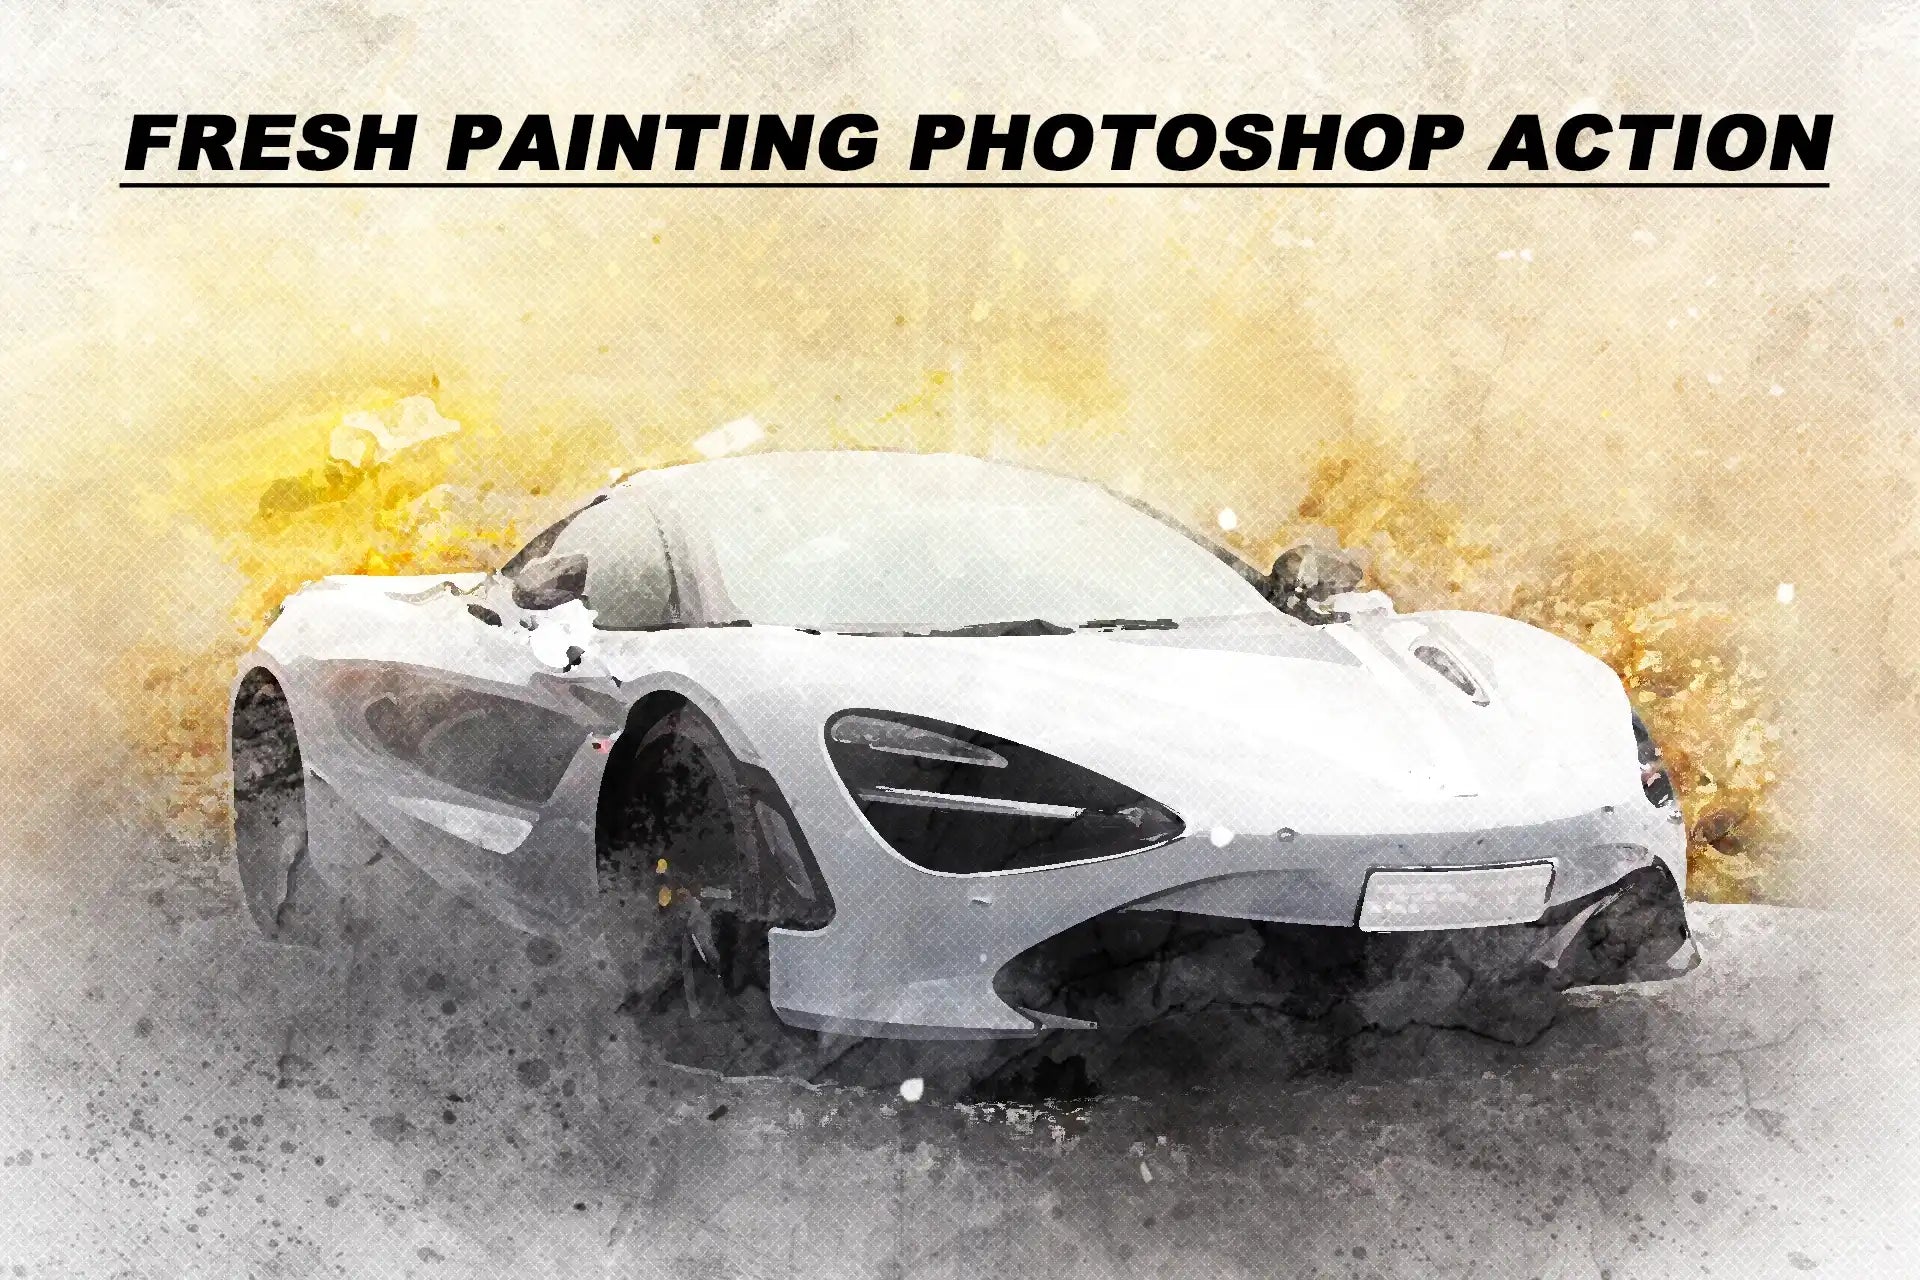 10 Artistic Painting Photoshop Actions Bundle - Photoboto